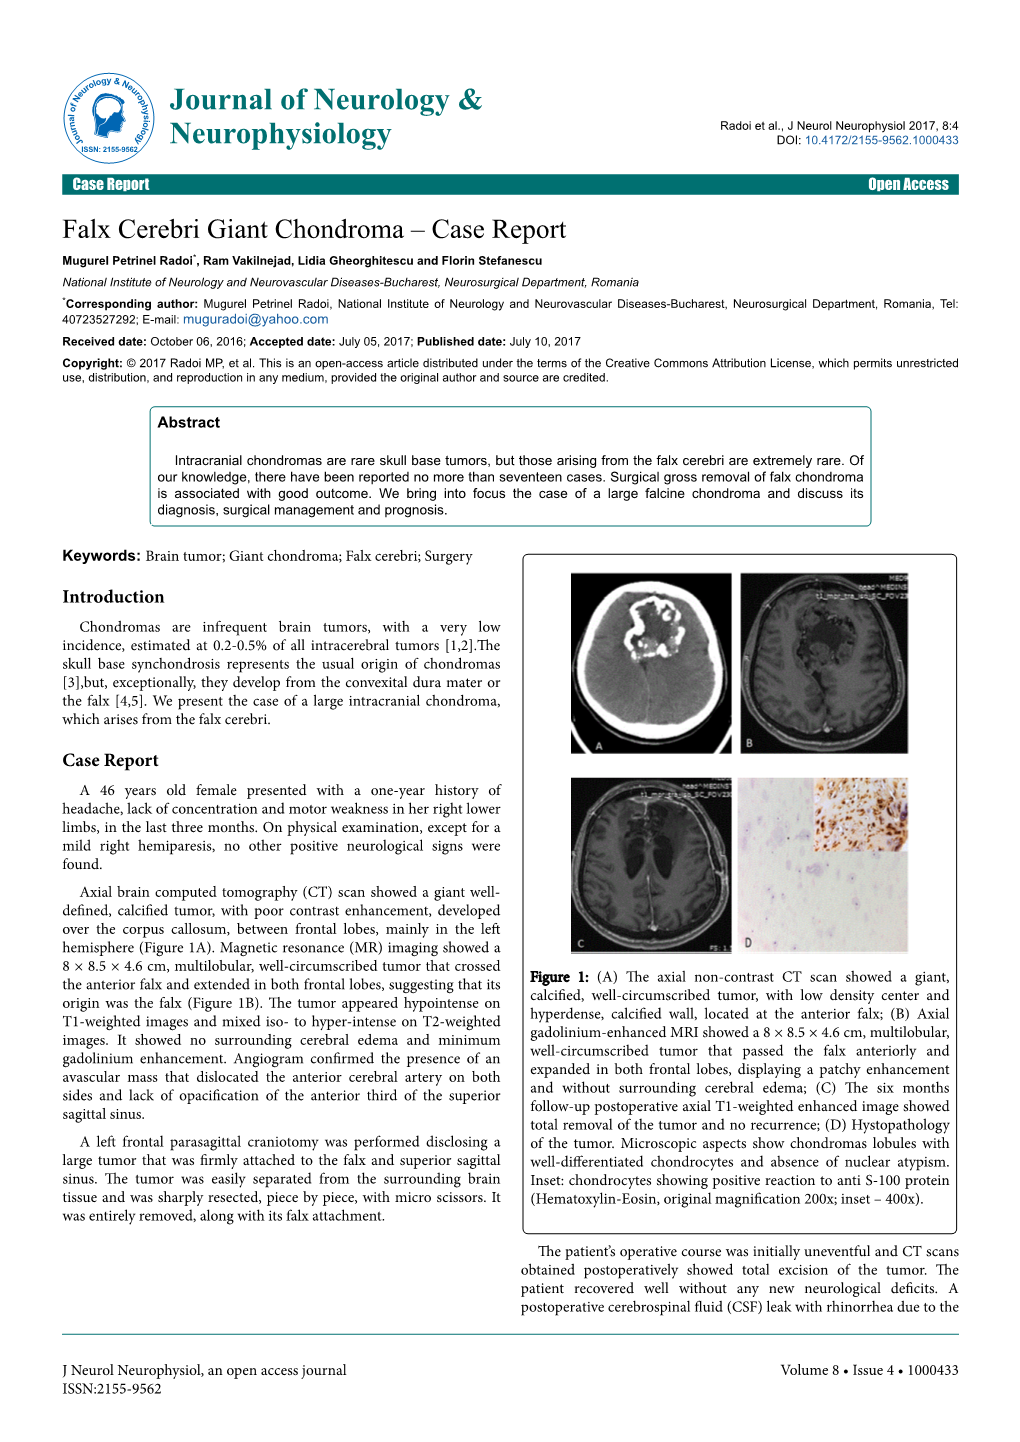 Falx Cerebri Giant Chondroma ‒ Case Report